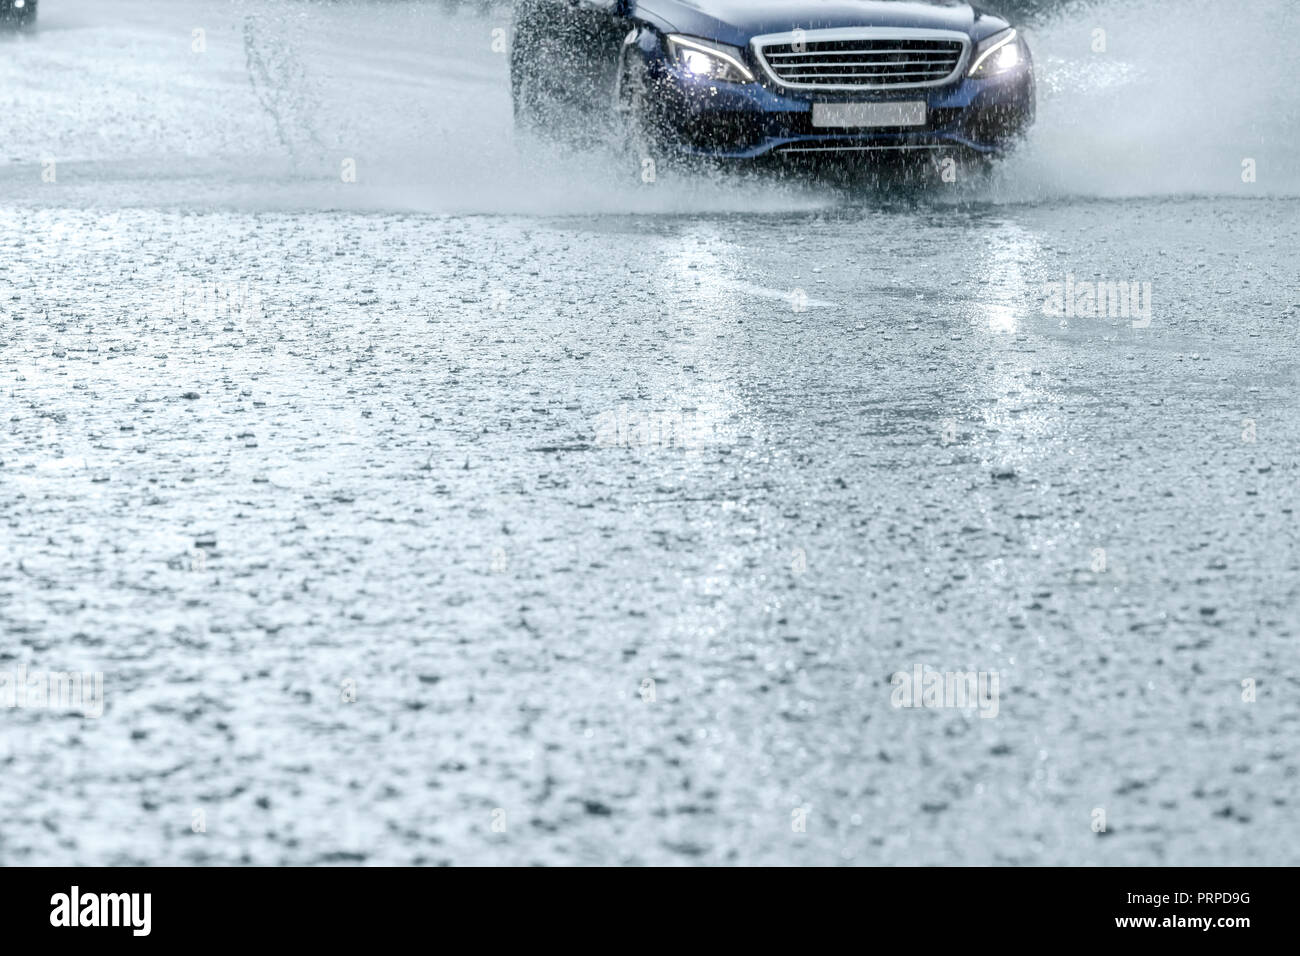 Coche en movimiento durante la lluvia pesada. Ciudad de asfalto camino cubierto con agua de lluvia Foto de stock